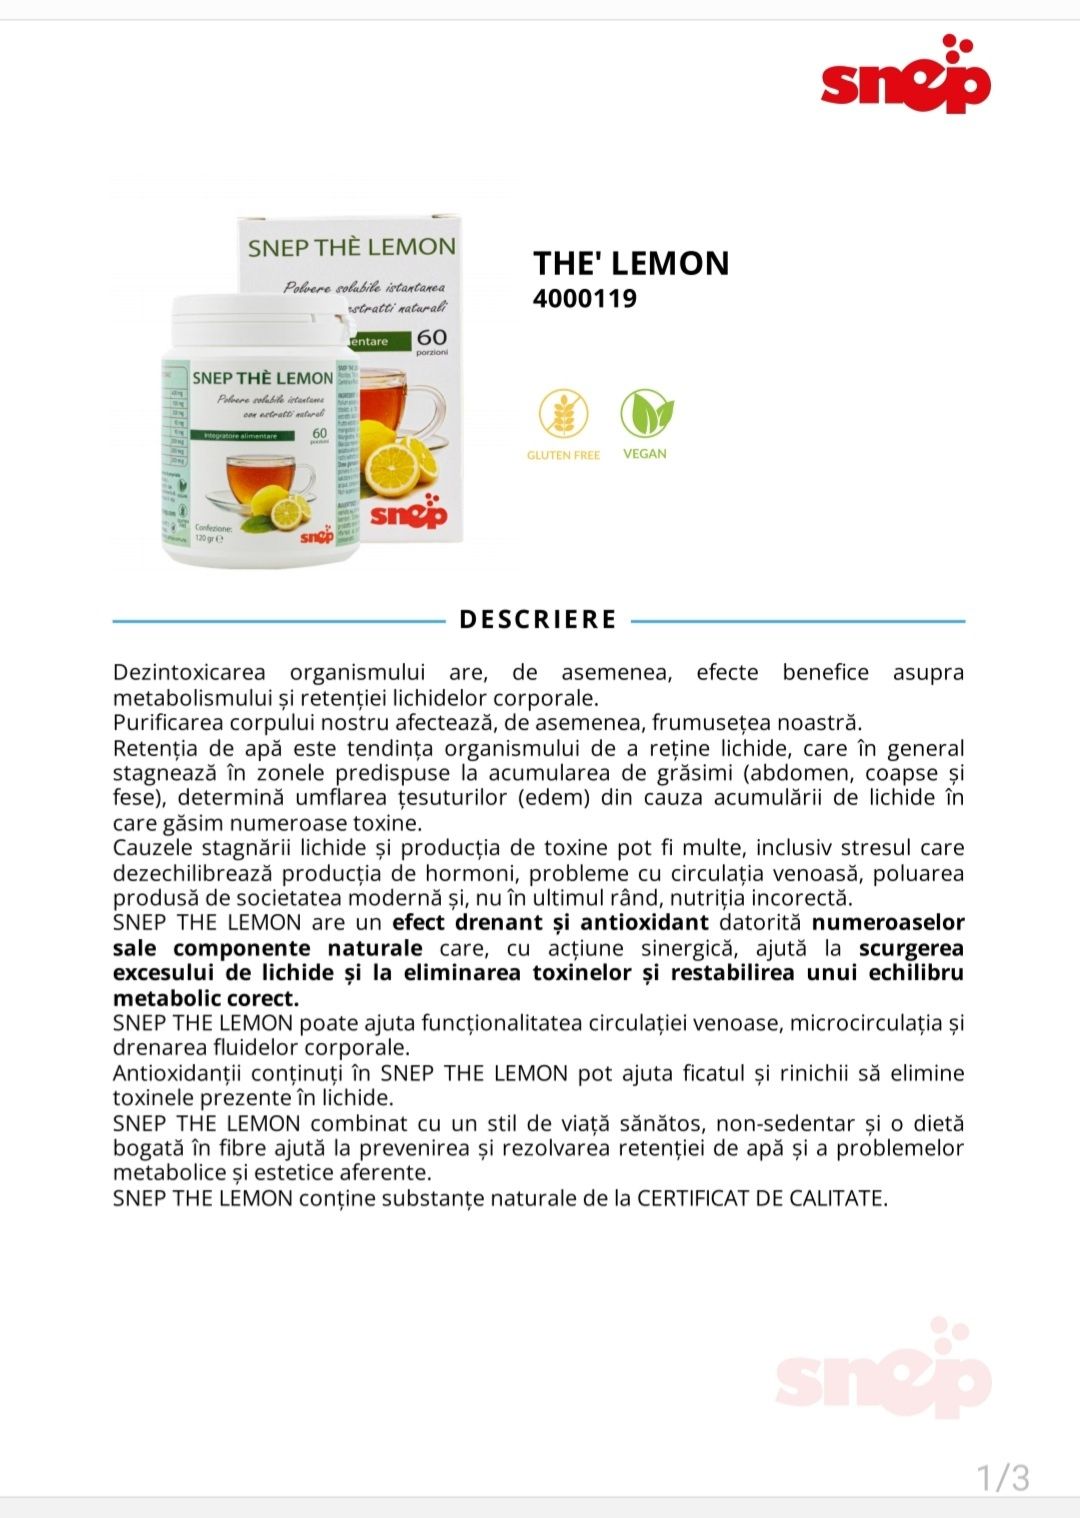 THE LEMON conține substanțe naturale de la CERTIFICAT DE CALITATE
Fru